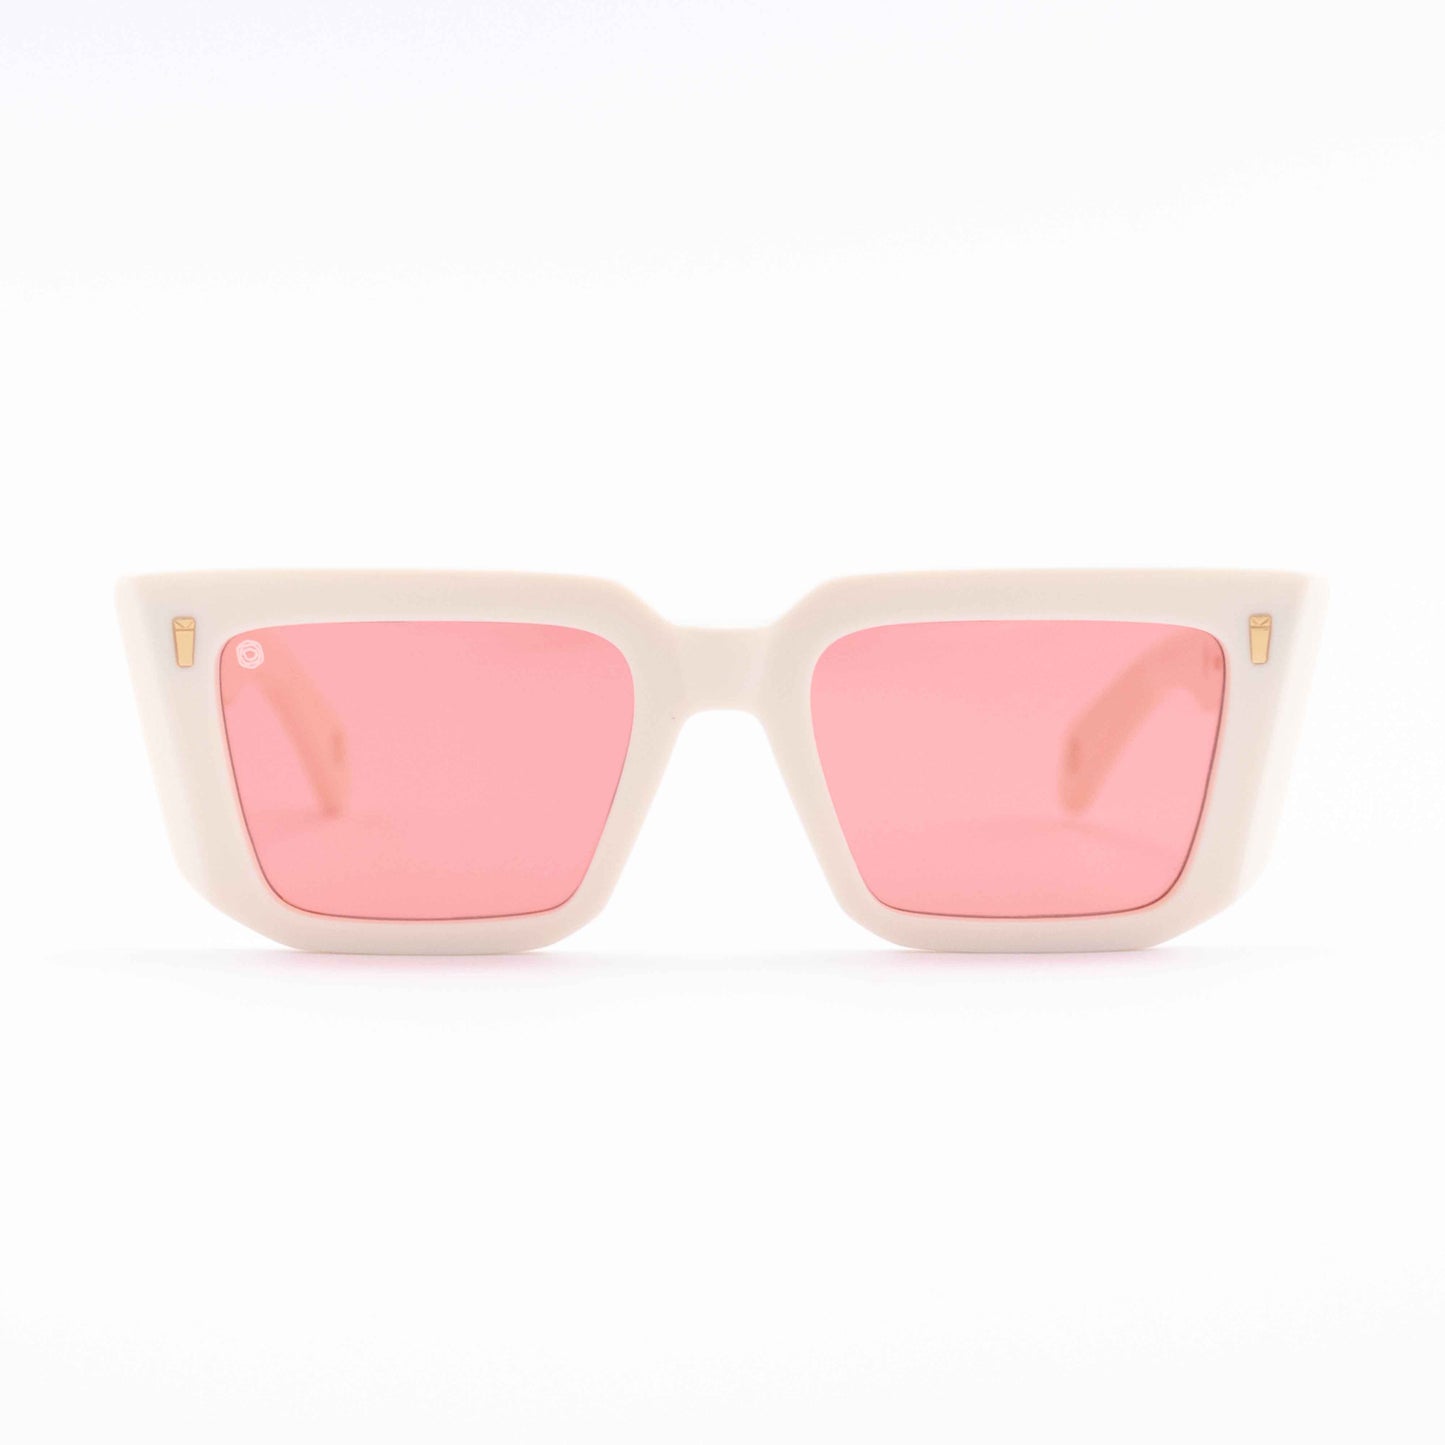 Cozy: streetstyle rectangular shaped bold acetate sunglasses - Kyme Eyewear